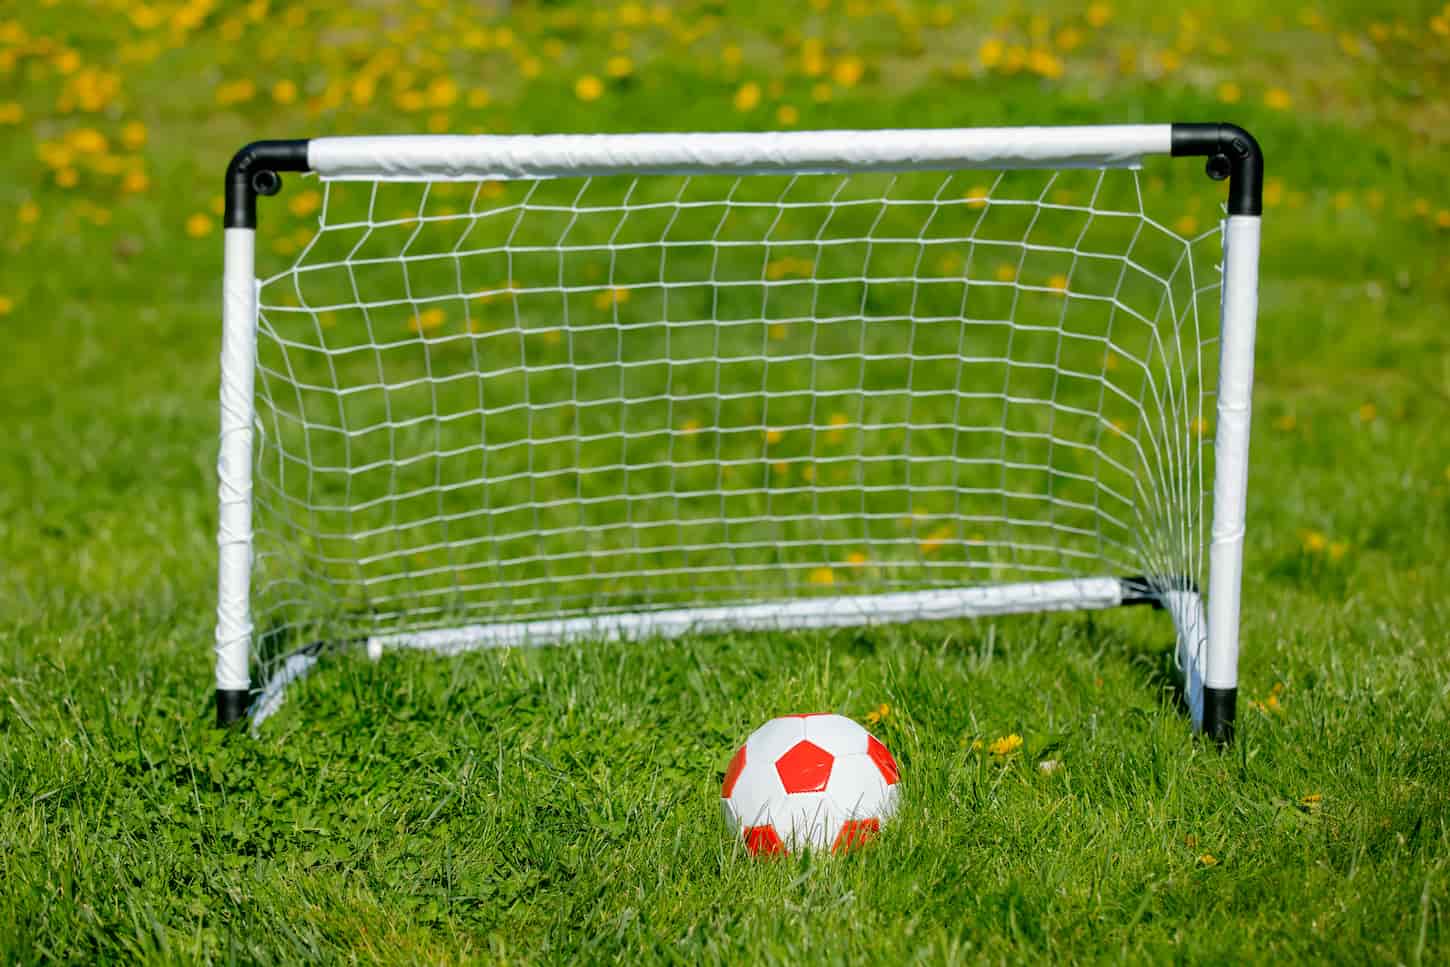 An image of a Little ball and football futsal on green grass.